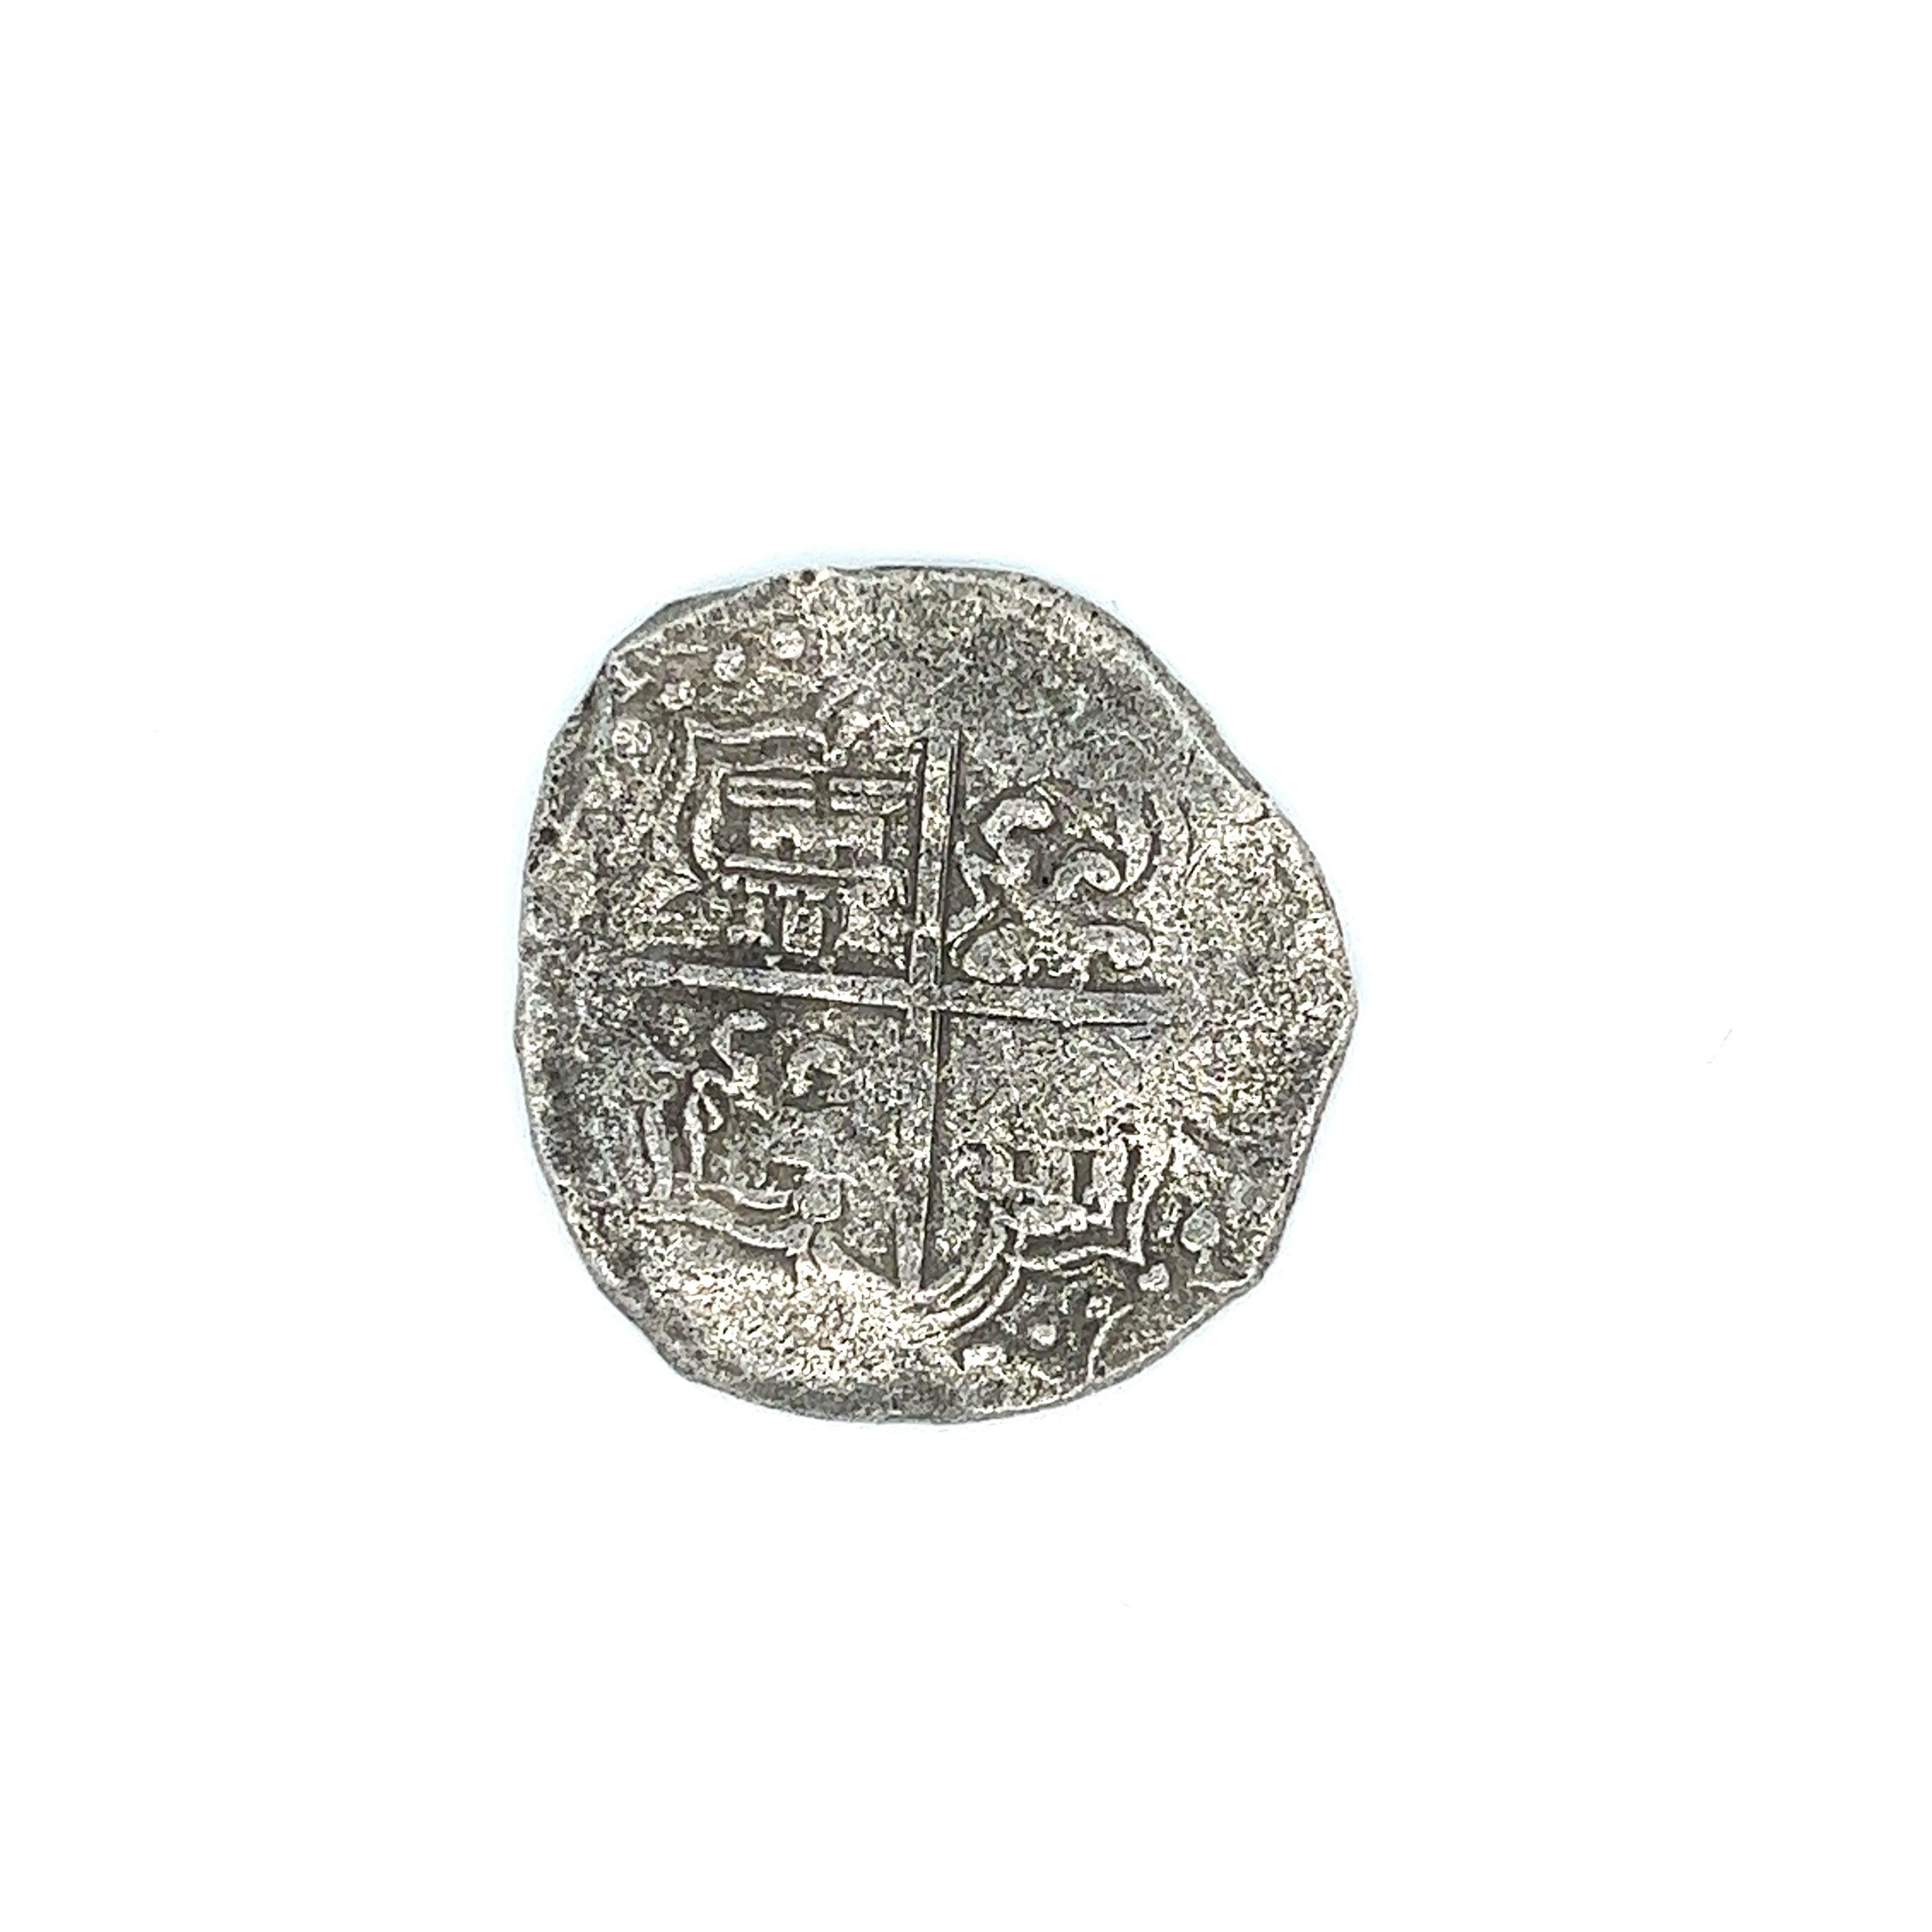 Original Atocha Shipwreck Silbermünze 8 Reale Potosi Prägegrad 3 unmontiert. Komplett mit dem Original der Treasure Salvors Inc. und der Unterschrift von Mel Fisher. 

Grad 2-3 bedeutet, dass die Münze aus der Mitte des Trümmerfeldes geborgen wurde